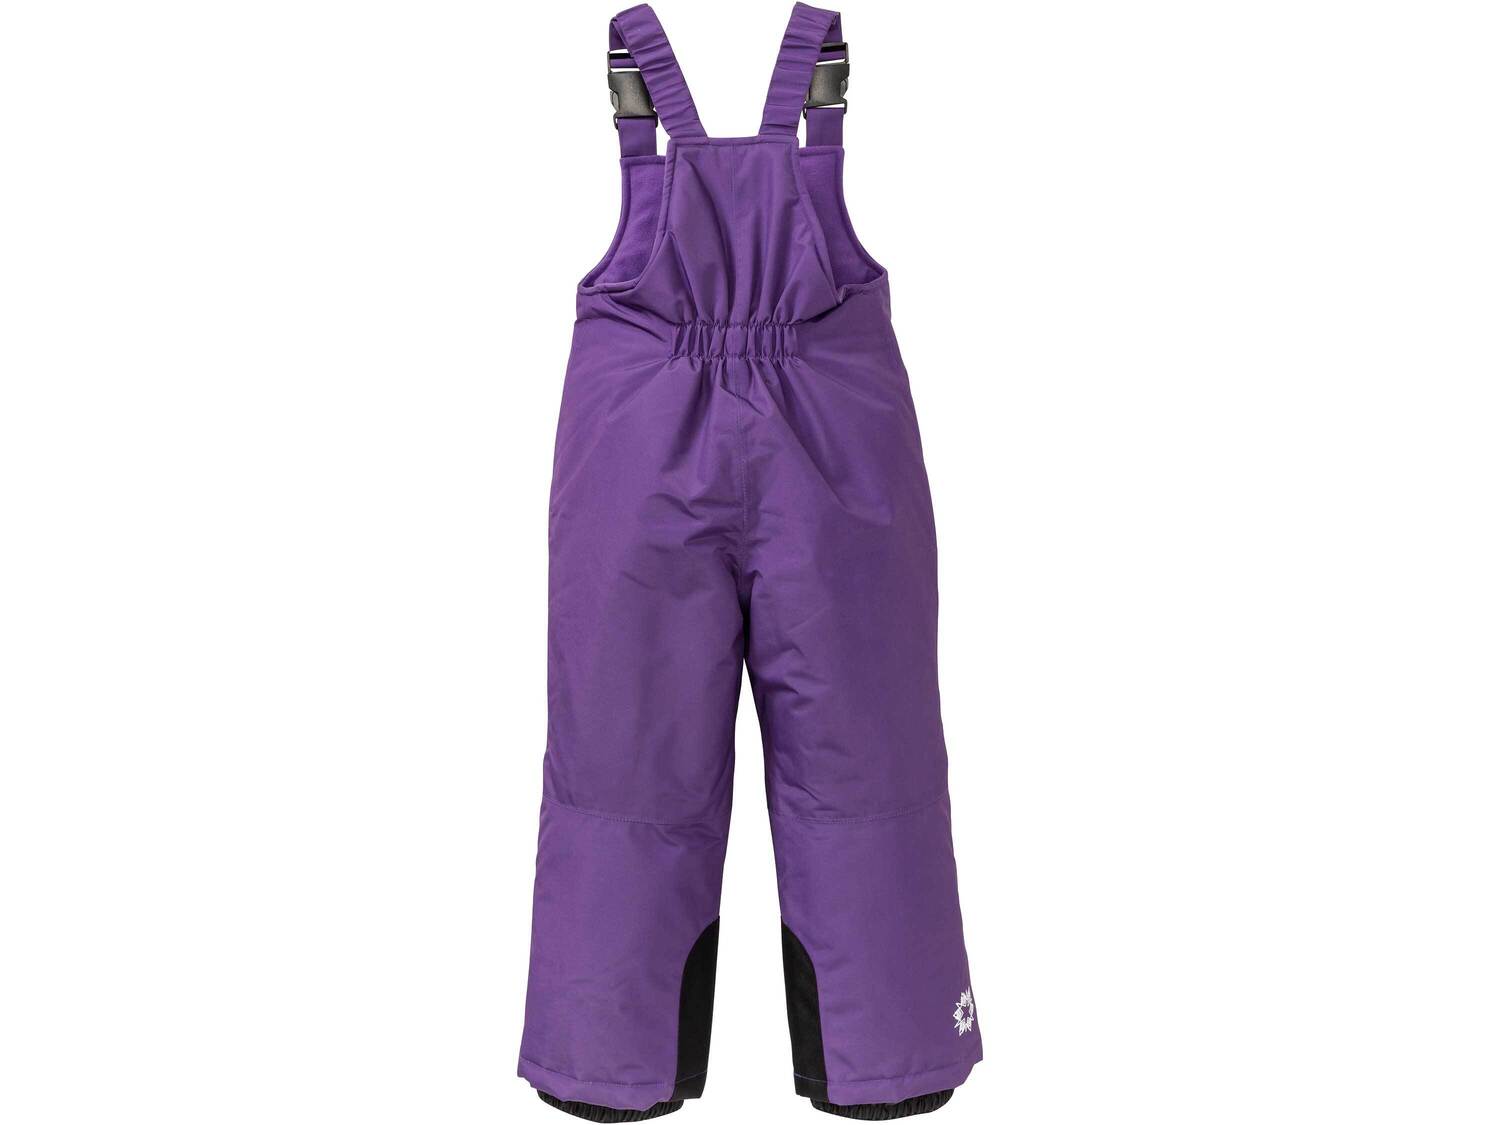 Funkcyjne dziecięce spodnie zimowe Crivit Pro, cena 38,50 PLN 
- rozmiary: 86-116
- ...